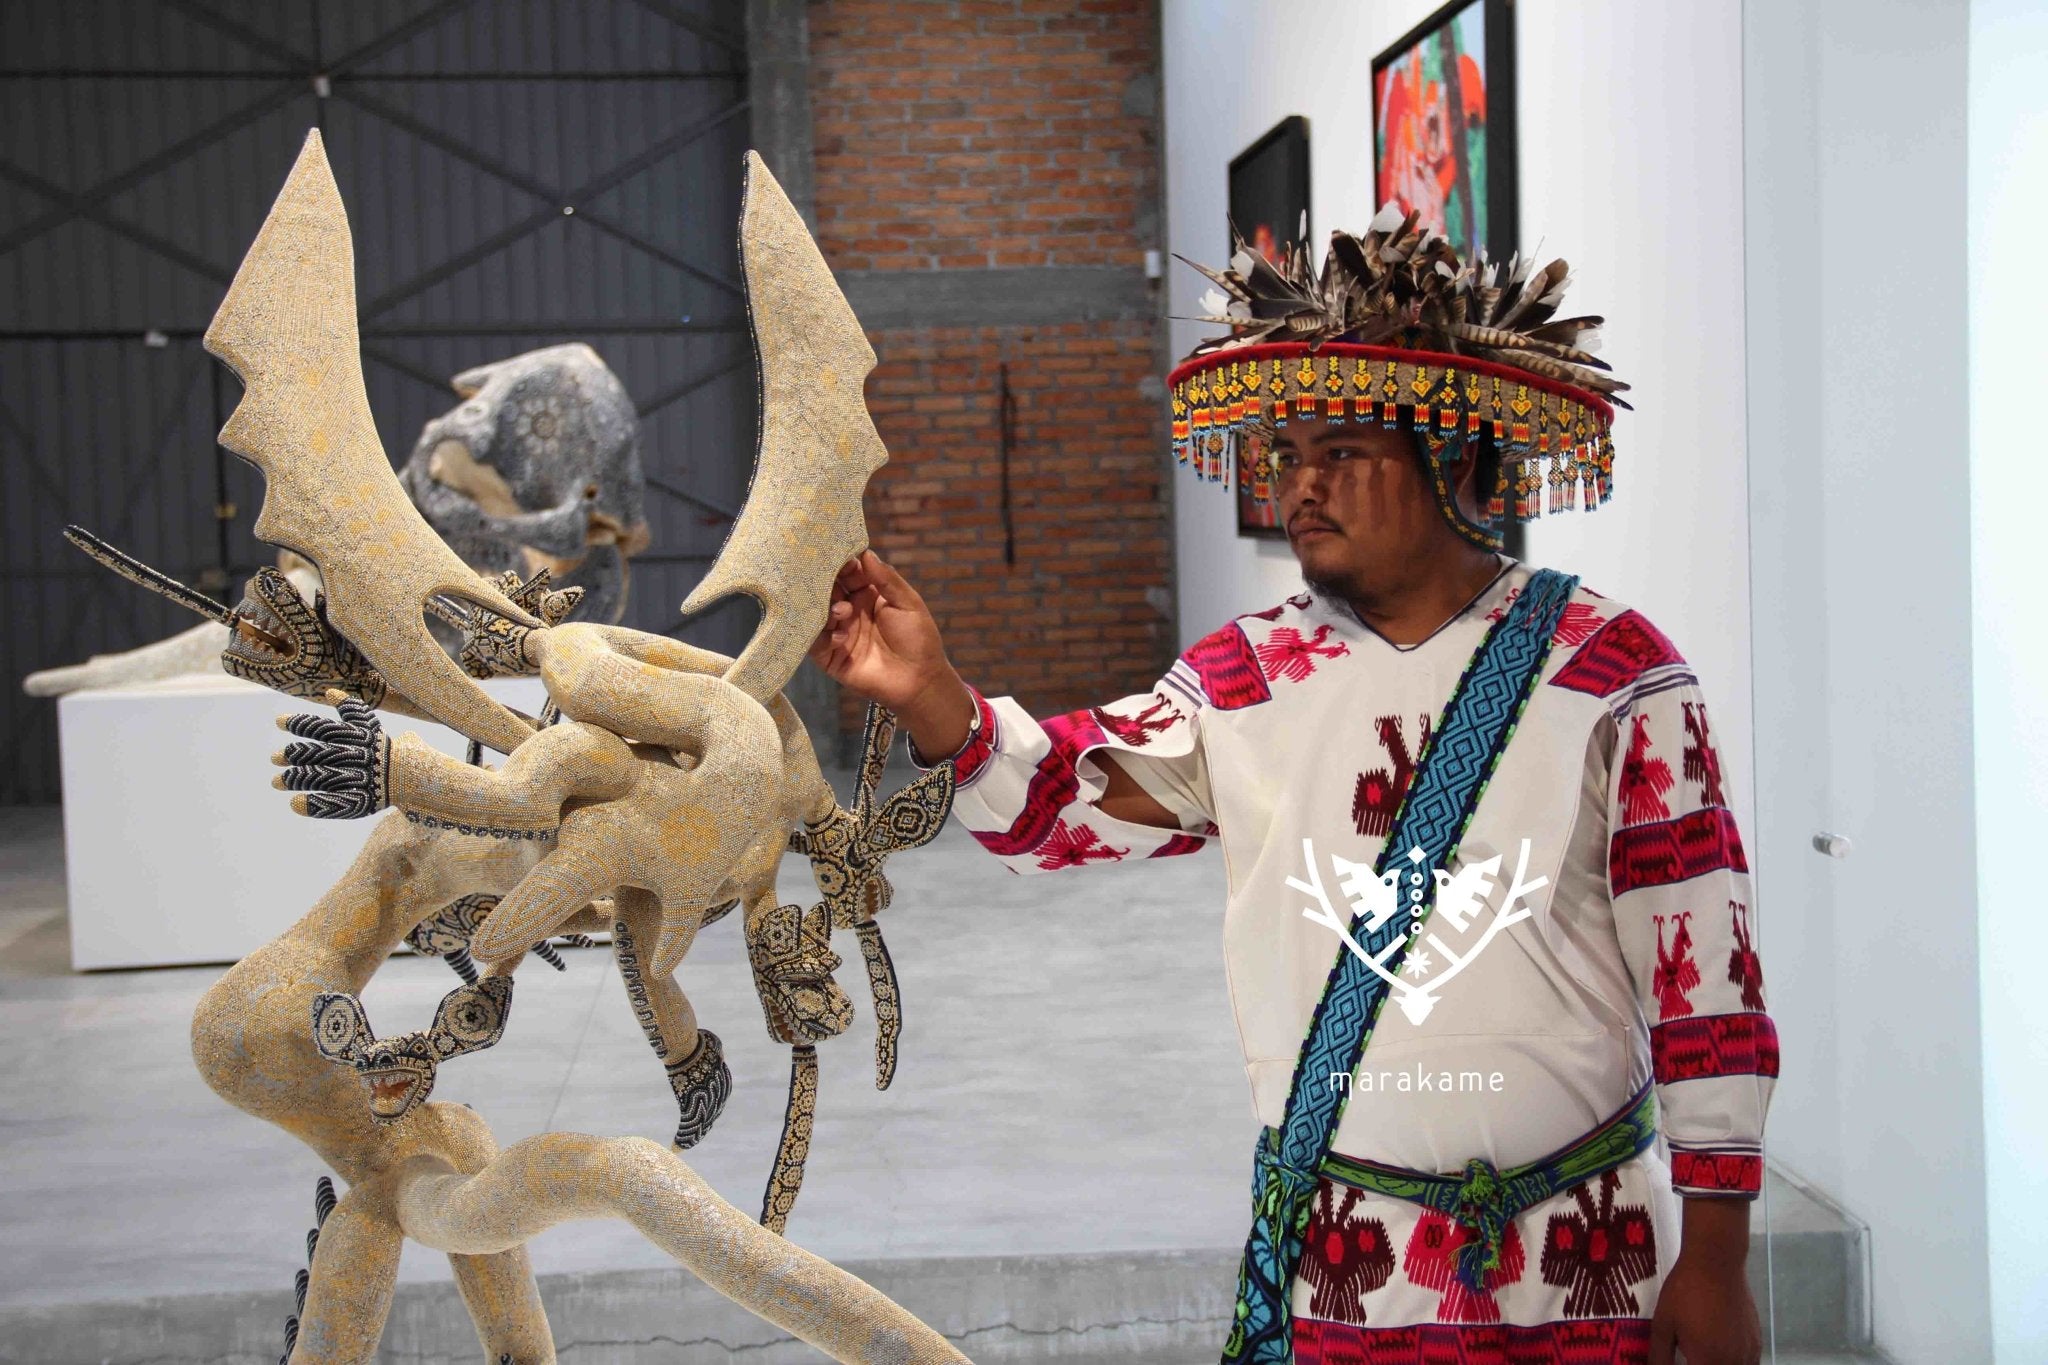 Le migliori sculture nell'arte Huichol - Arte Huichol - Marakame